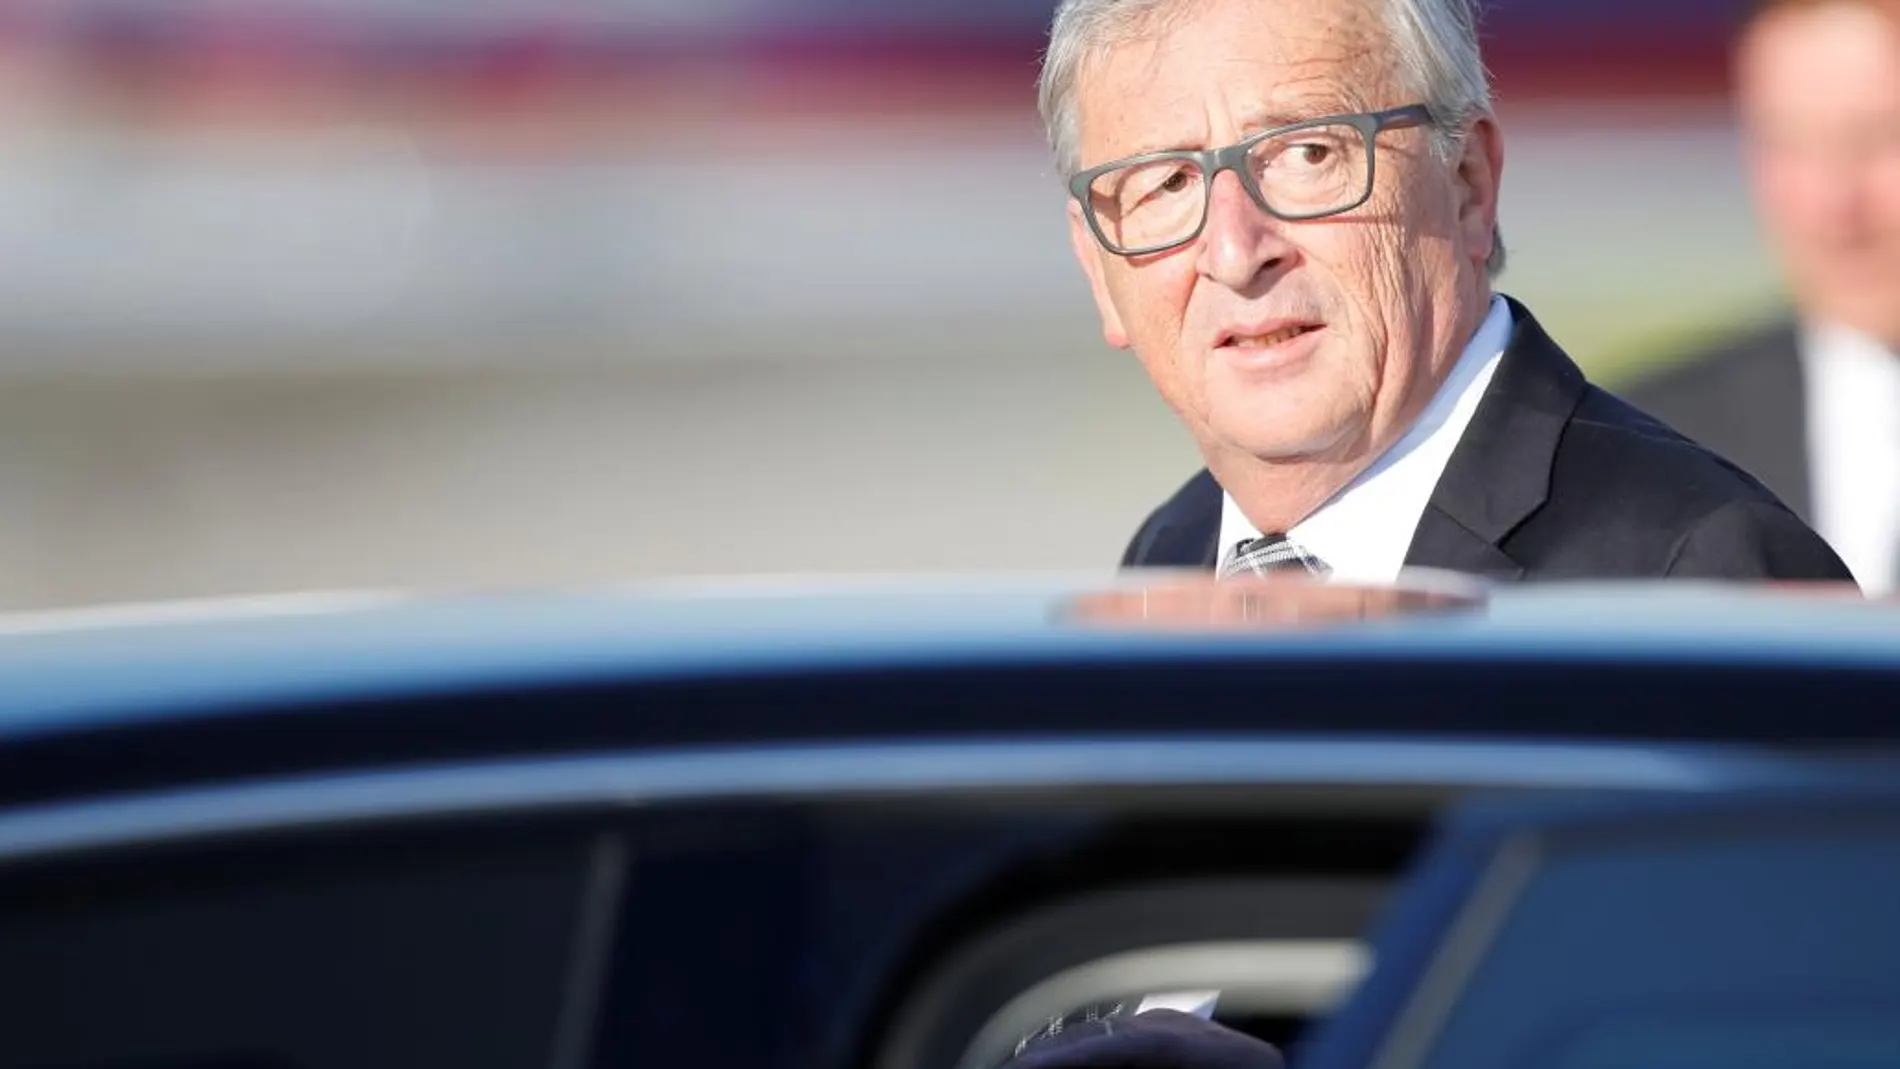 El presidente de la Comisión Europea (CE), Jean-Claude Juncker